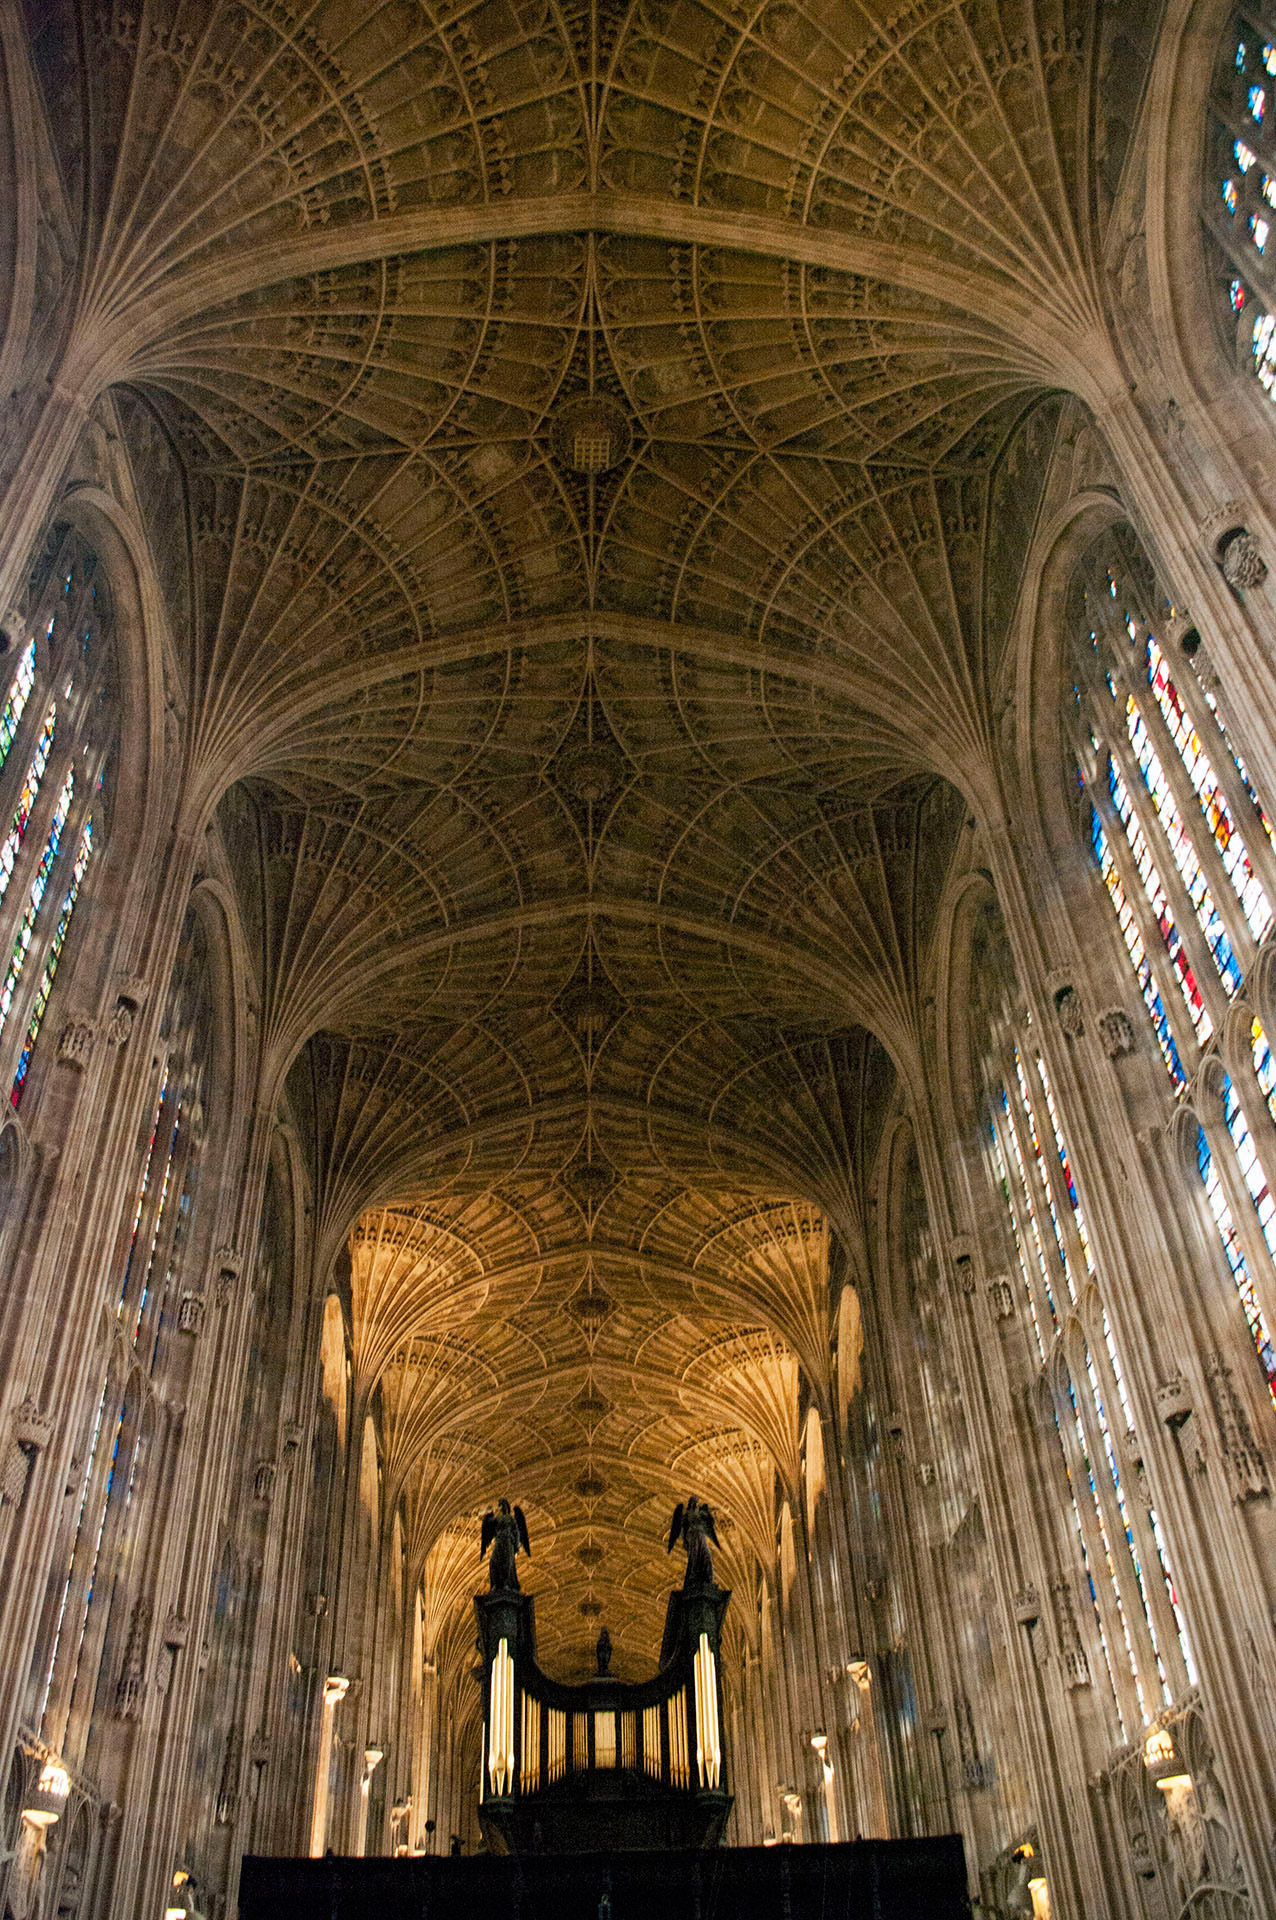 Katedra w Cambridge, średniowiecze, gotyk, sklepienie, podróże, podróże po Europie, fotografia Monika Turska